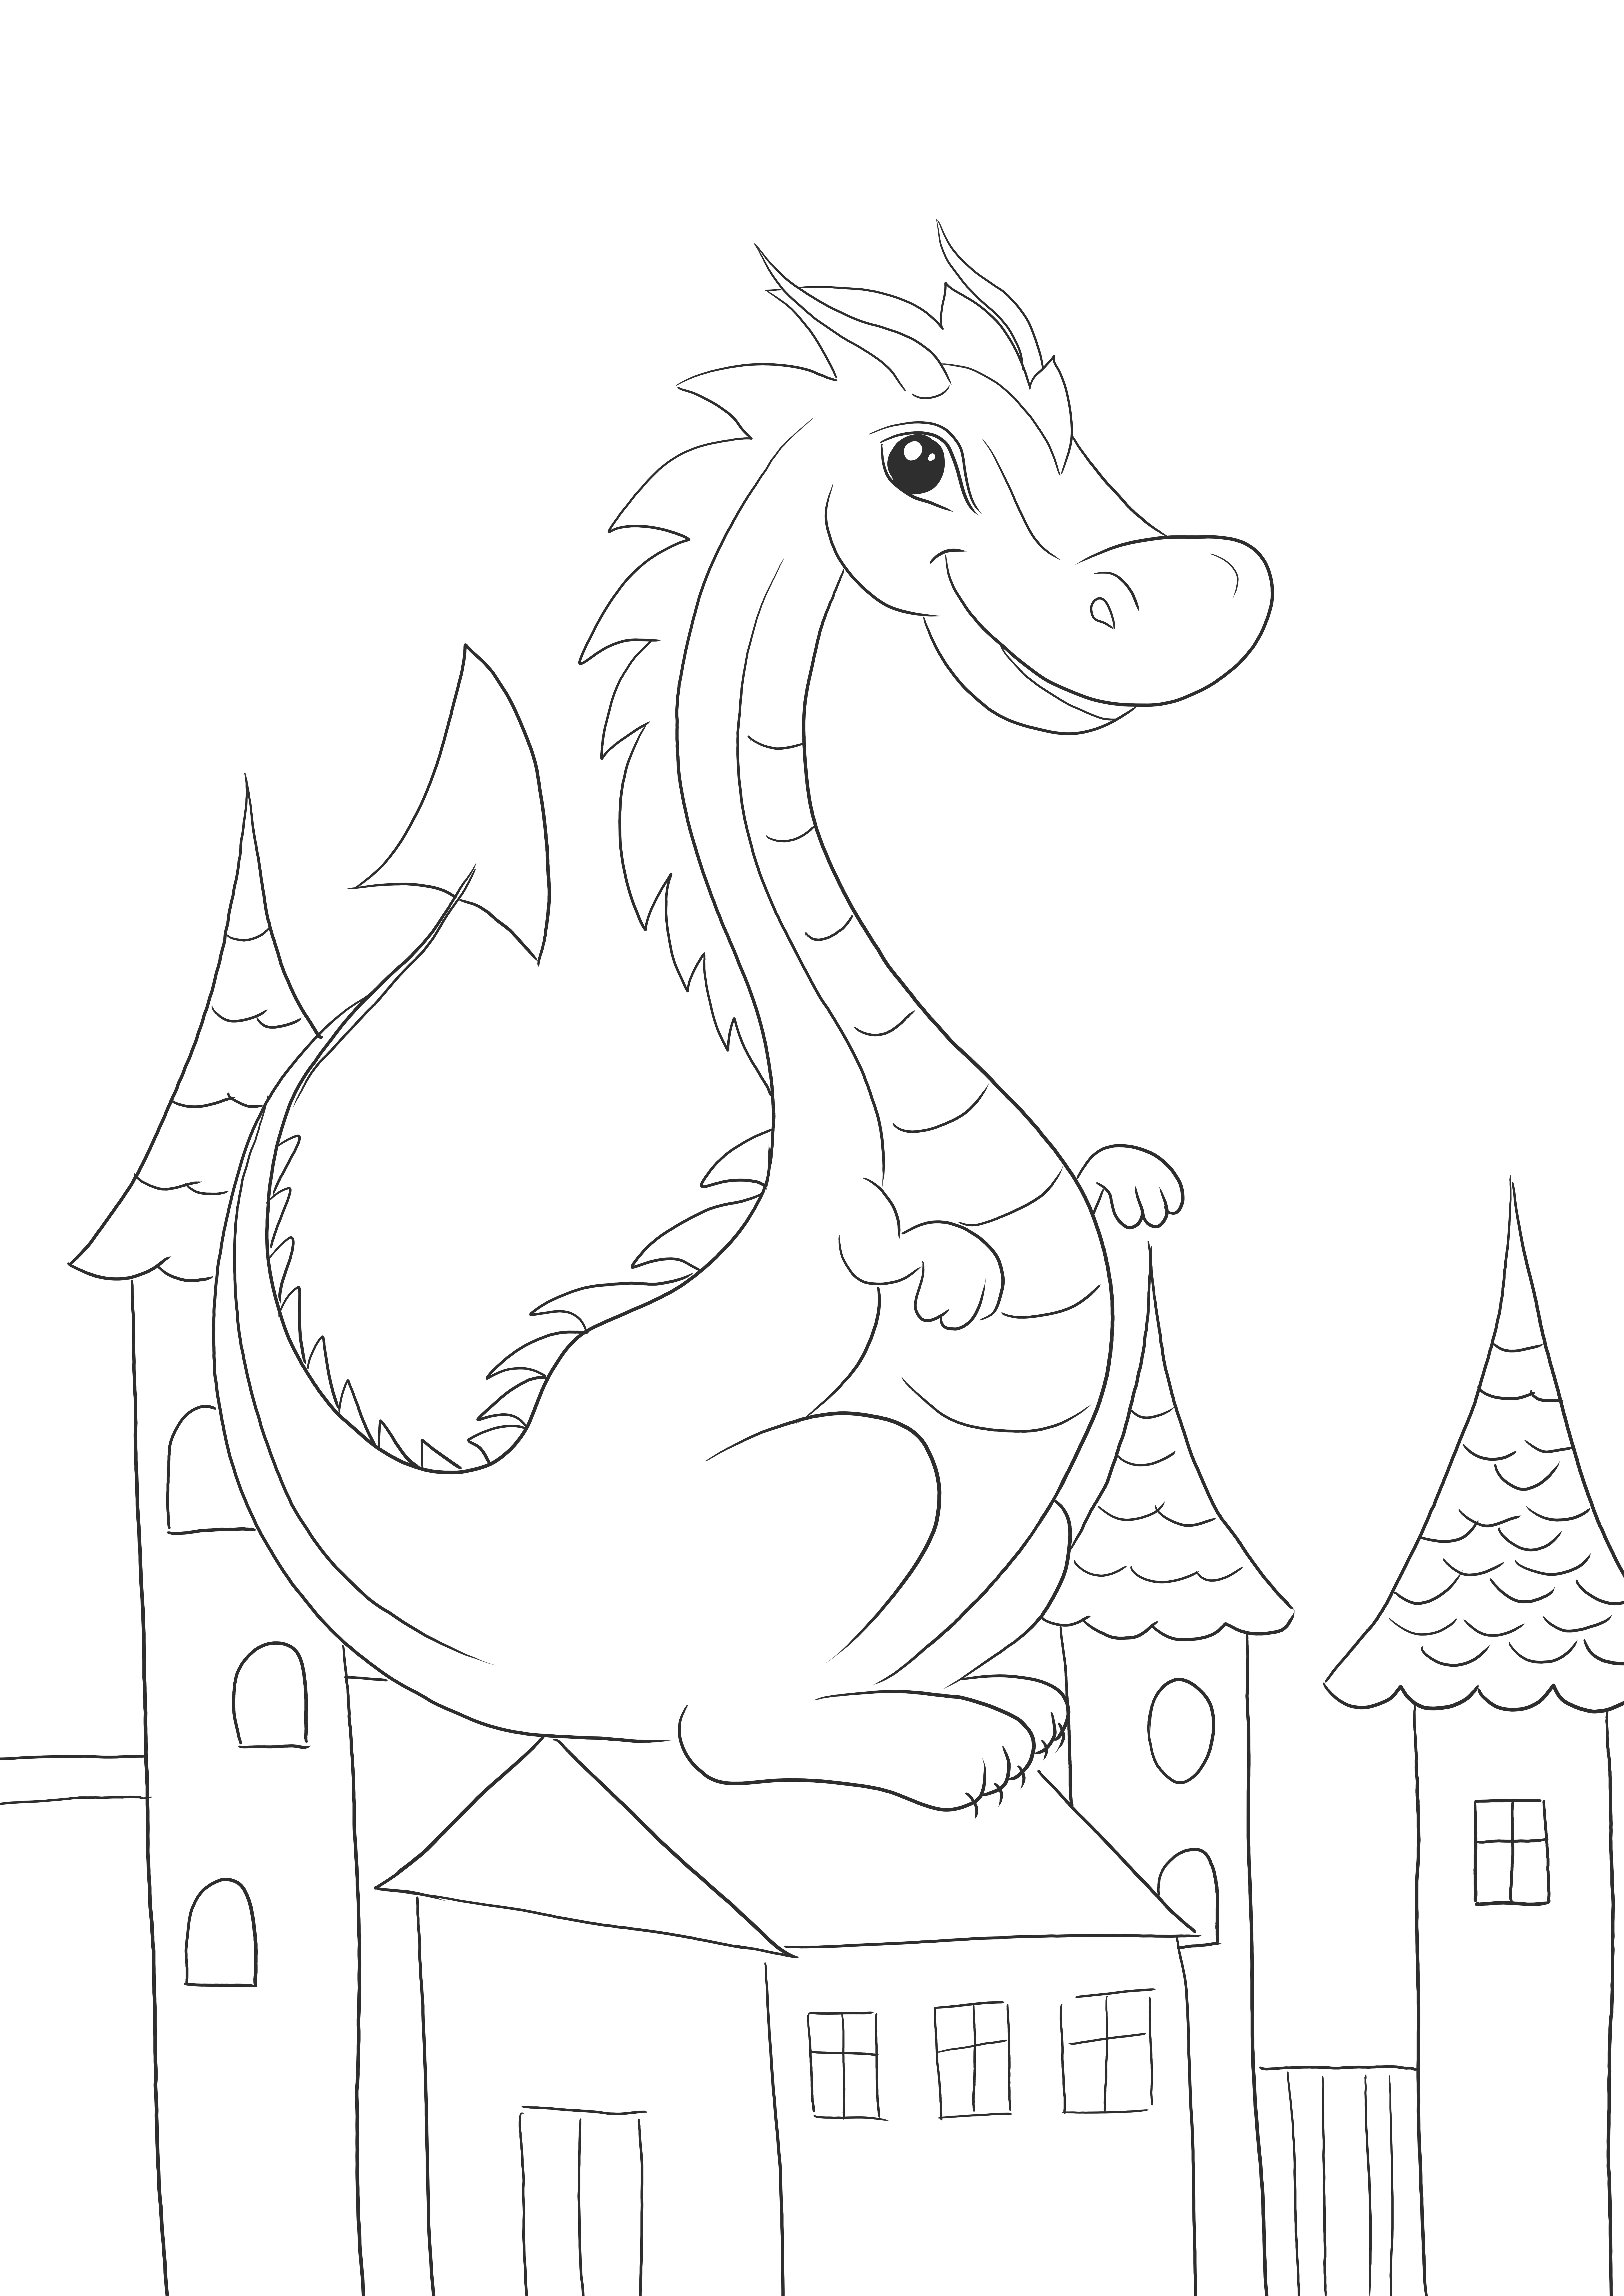 Lindo dragón para imprimir y colorear gratis para niños de todas las edades